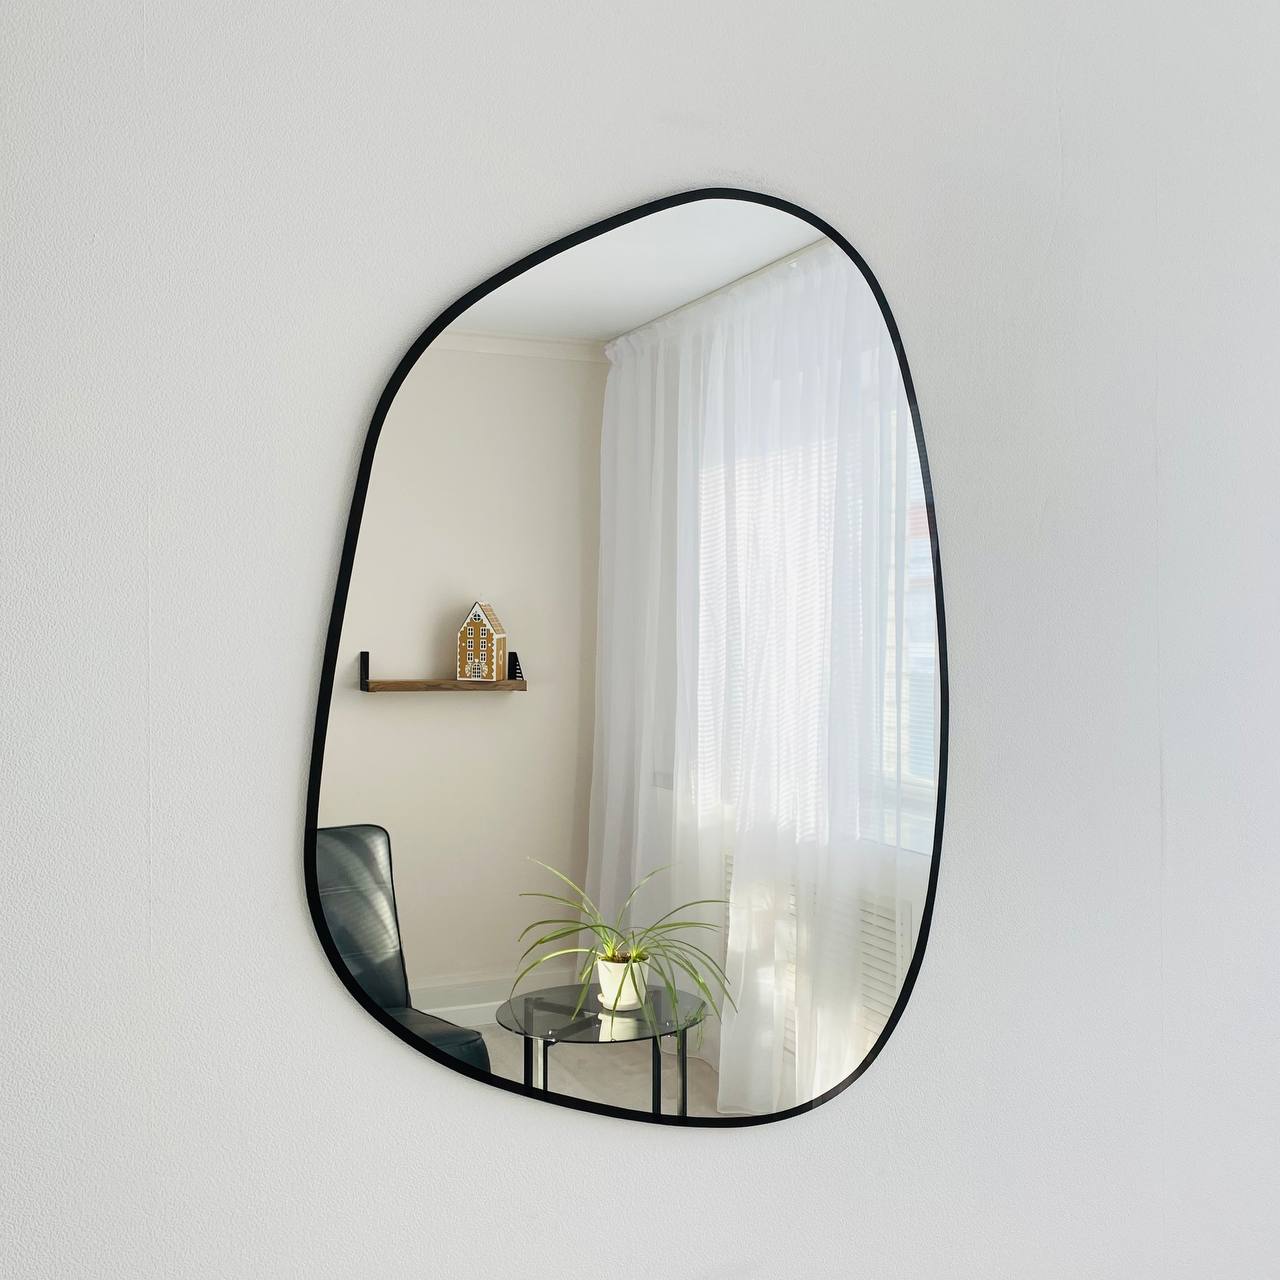 Зеркало настенное интерьерное СЕДАК Вlack Stone 900х650 мм, с черной окантовкой